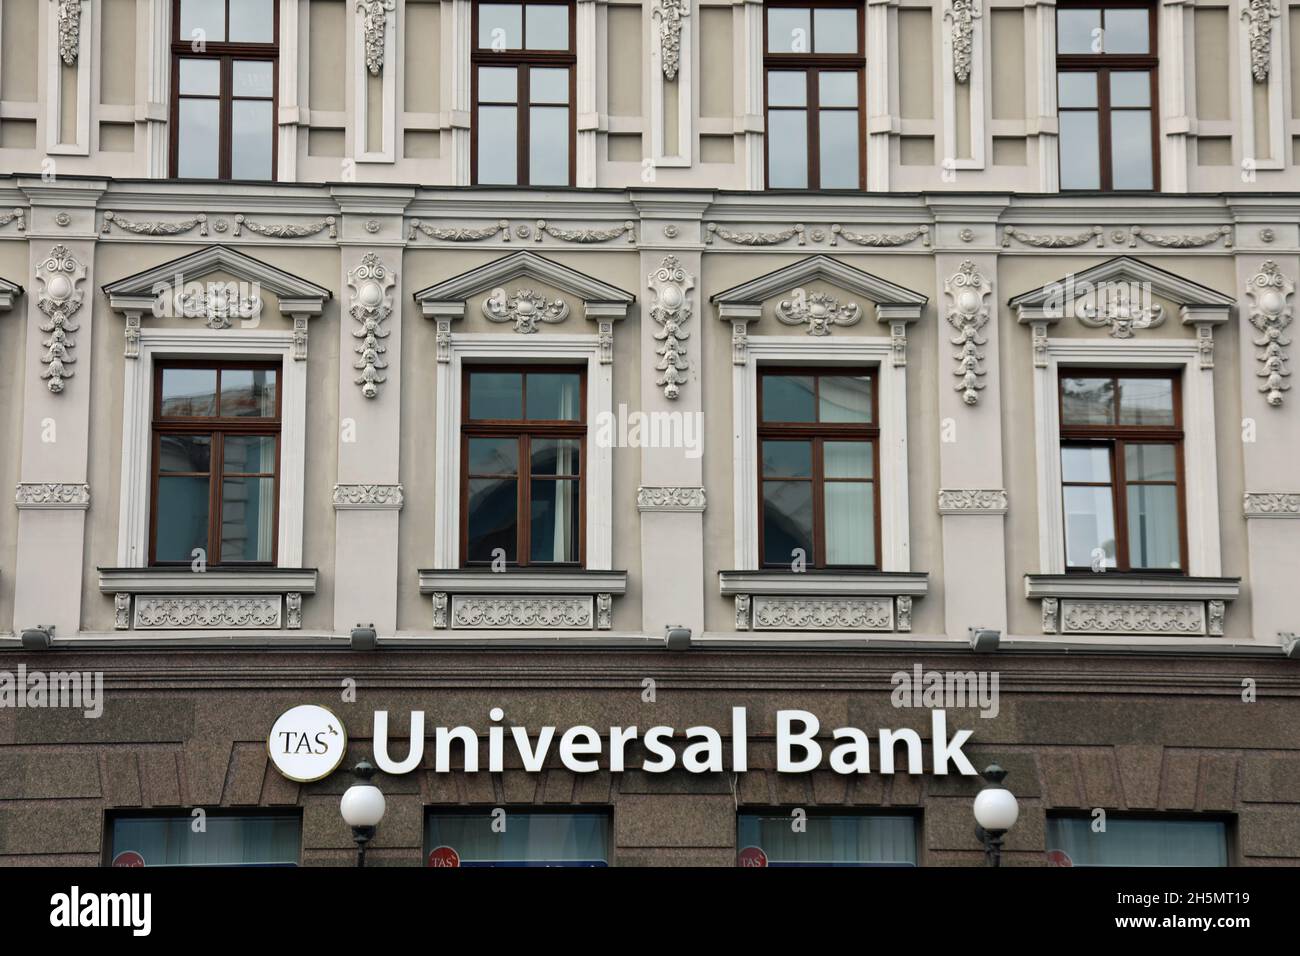 Banca universale immagini e fotografie stock ad alta risoluzione - Alamy